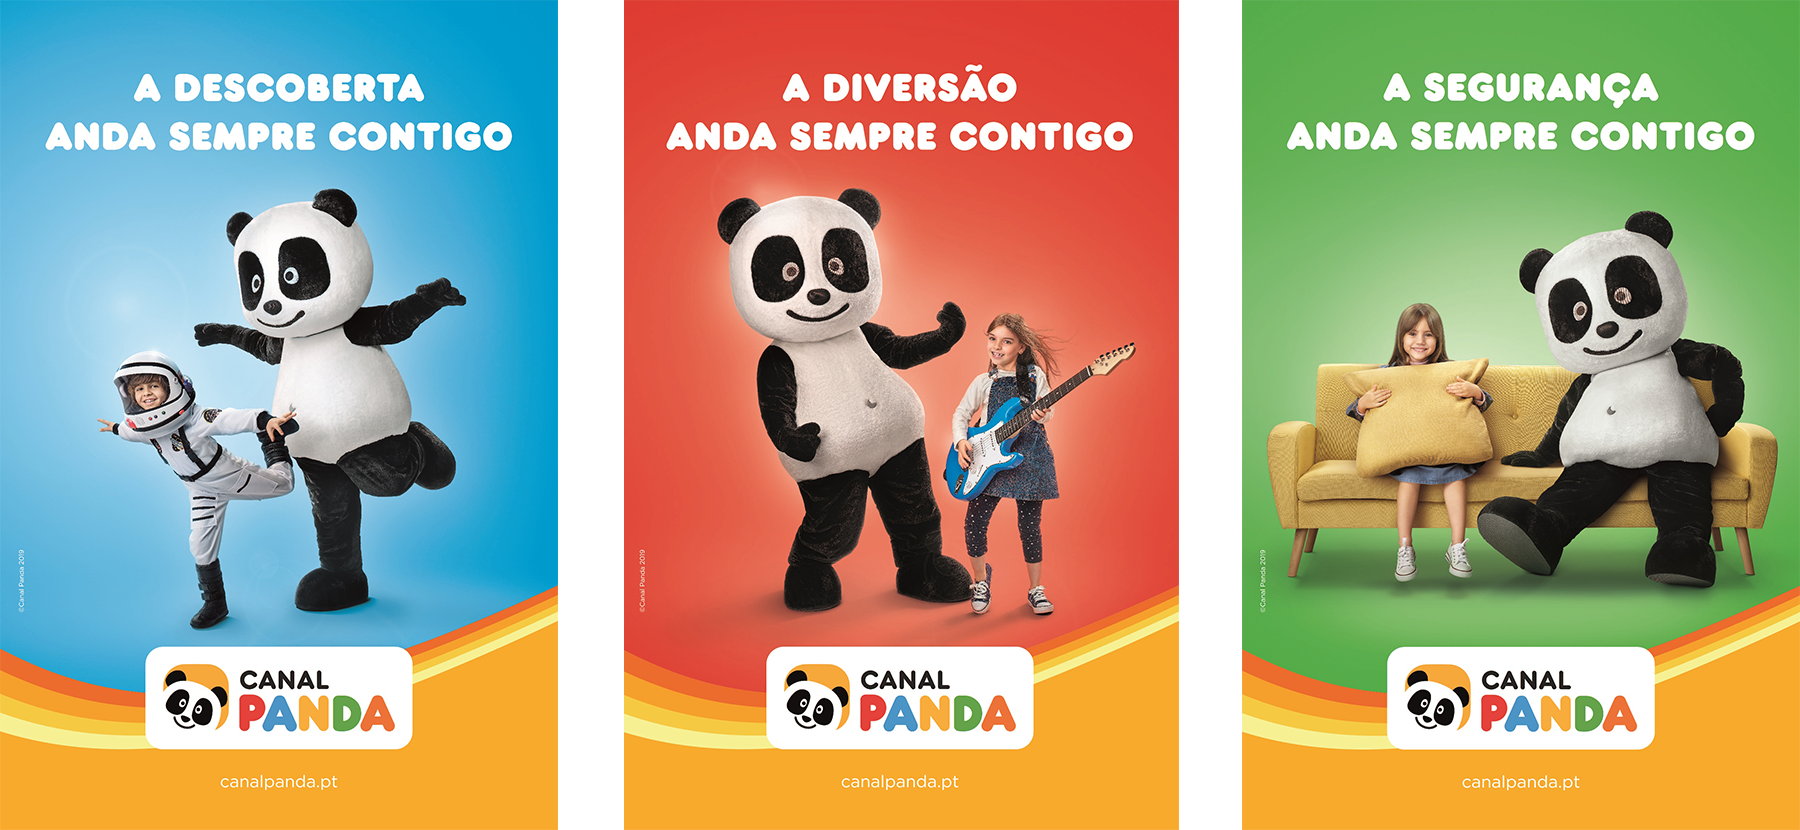 ESTÁ A CHEGAR UMA NOVA AMIGA AO CANAL PANDA! 😻 